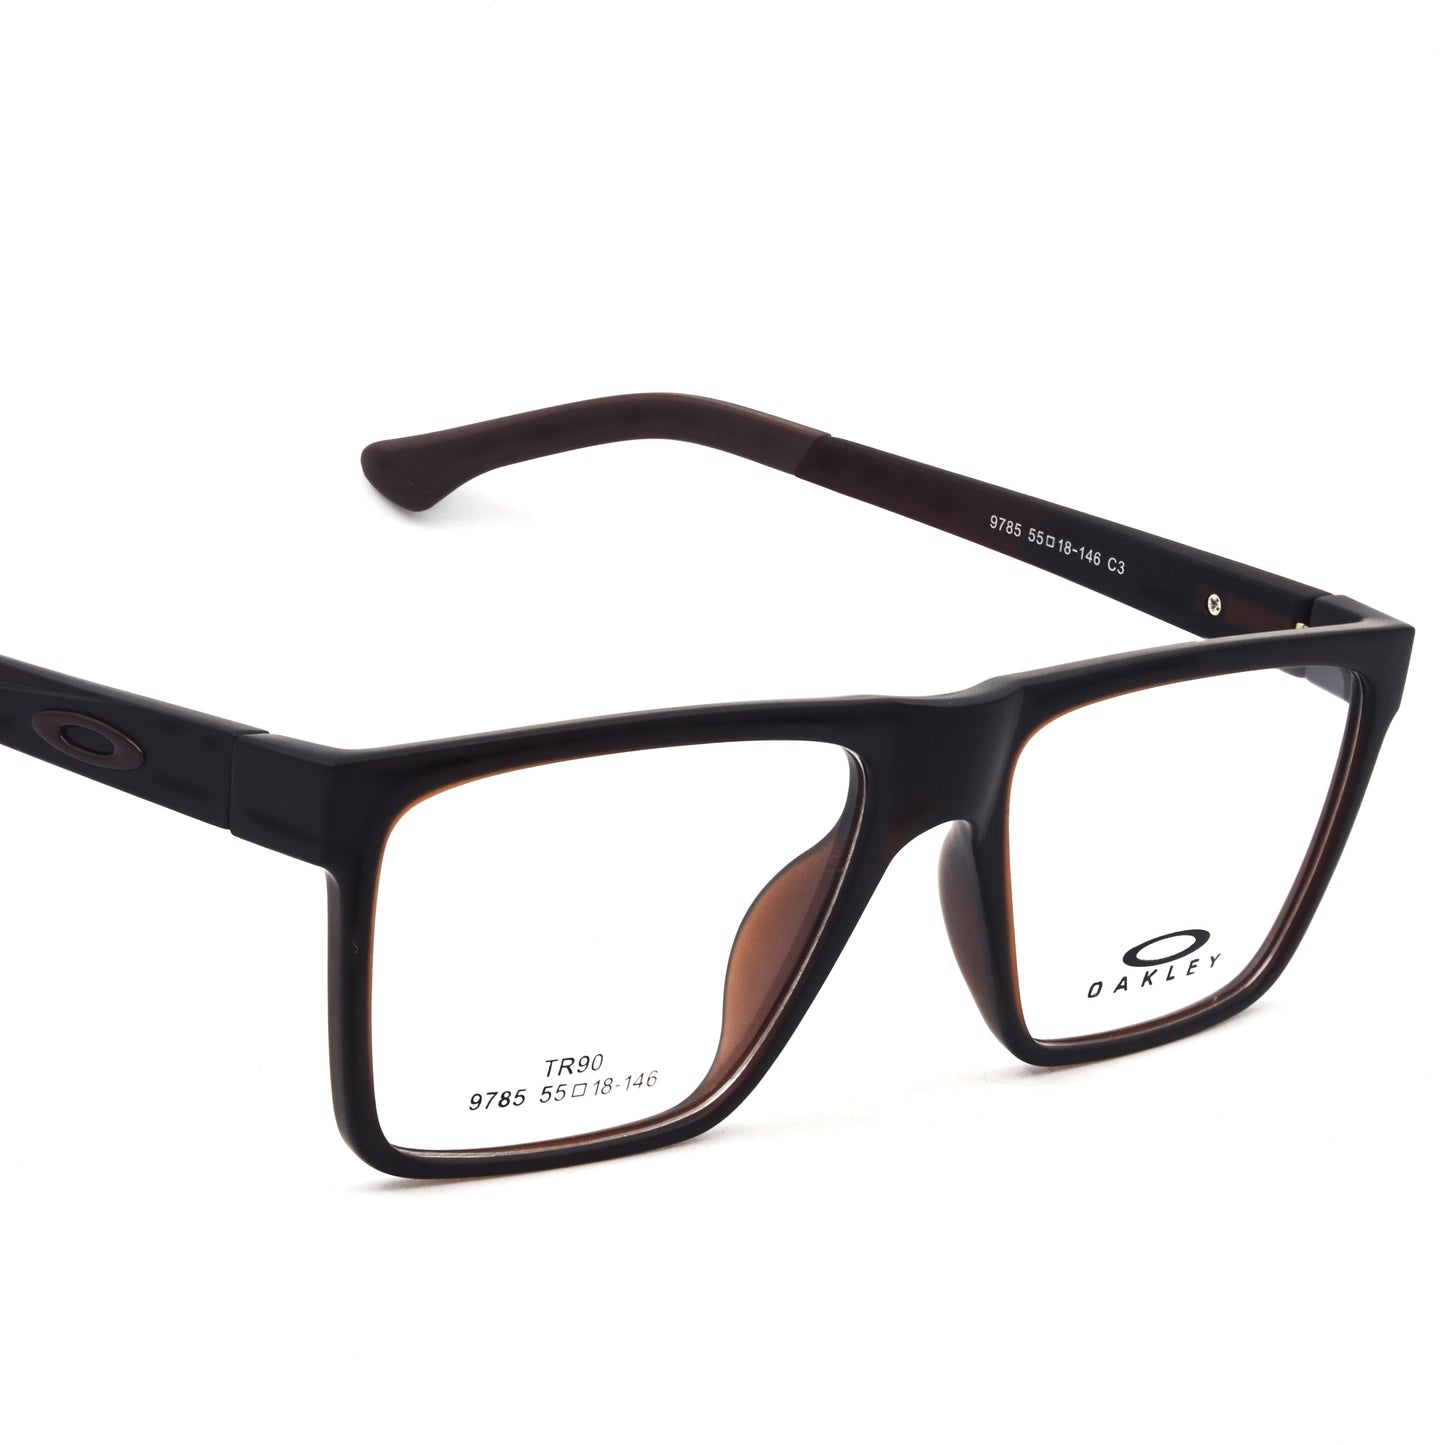 Trendy Stylish Eye Glass | OKL Frame 1004 C | Premium Quality